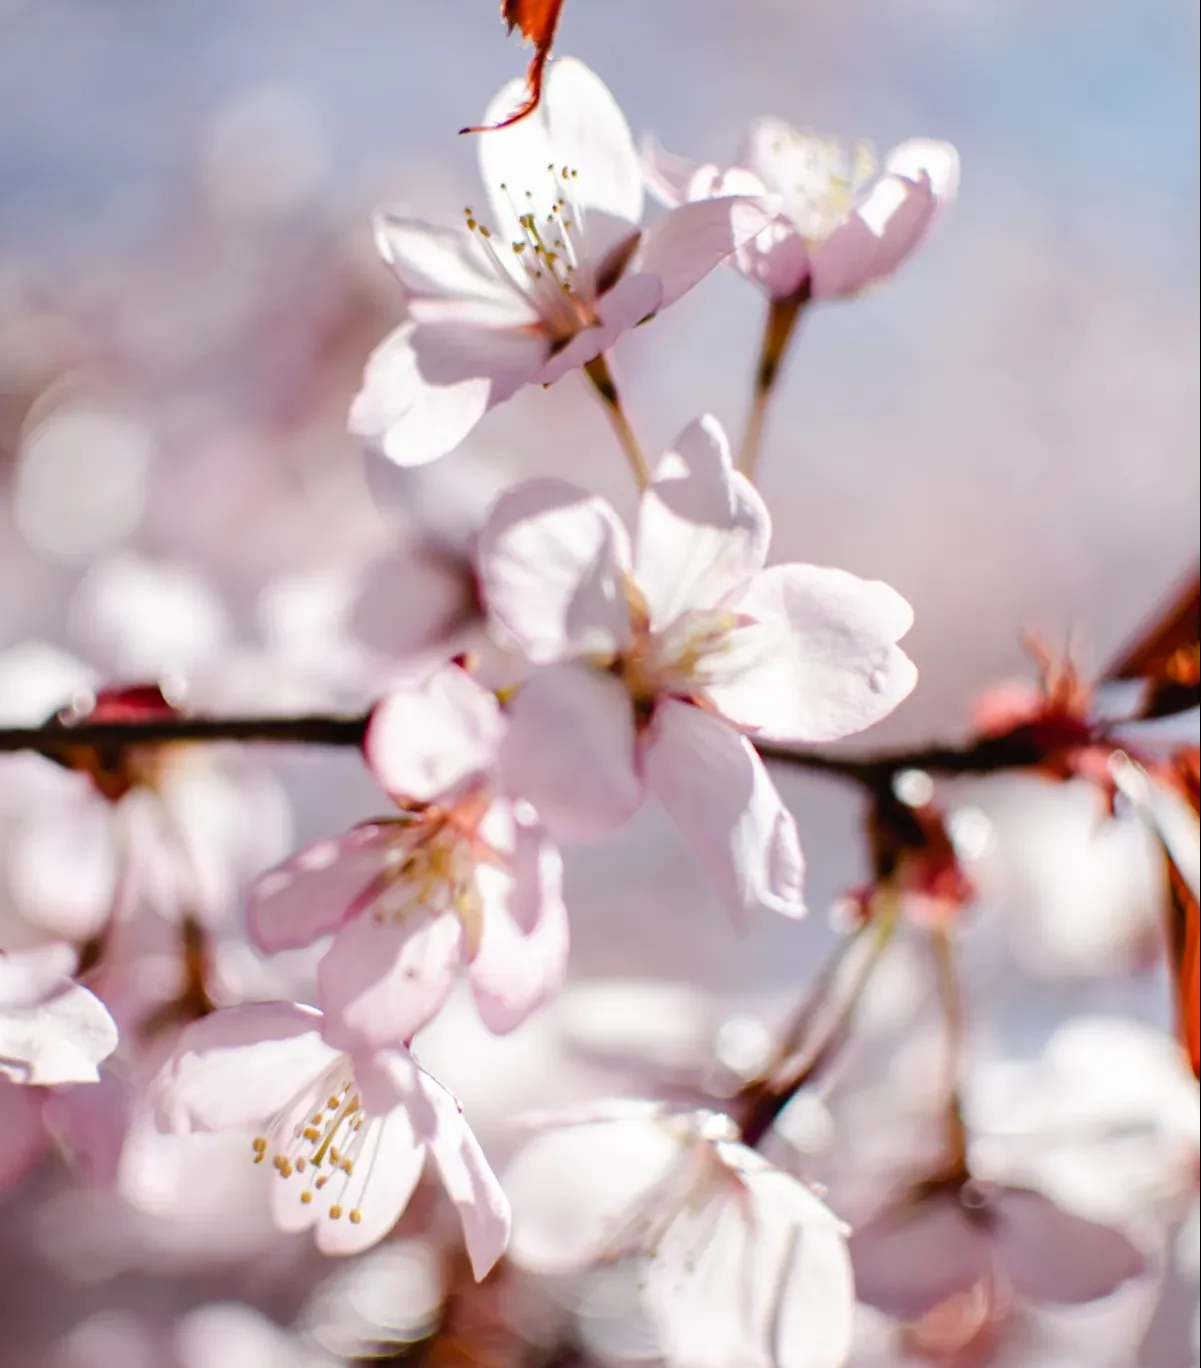 arbres fleuries allergie au pollen au printemps plantes